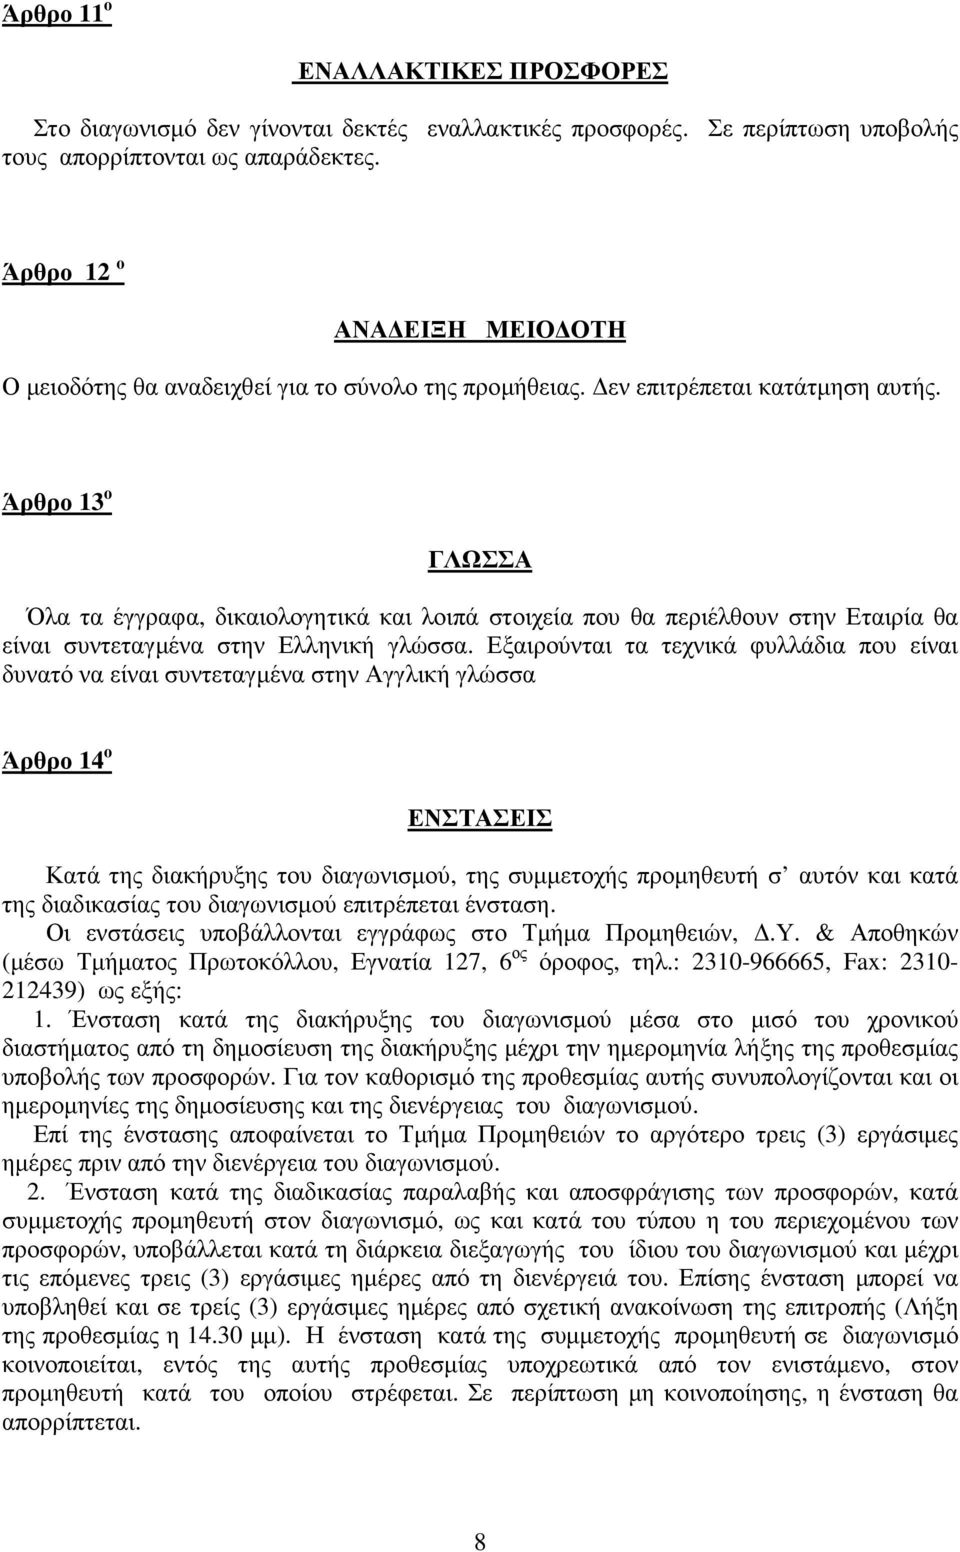 Άρθρο 13 ο ΓΛΩΣΣΑ Όλα τα έγγραφα, δικαιολογητικά και λοιπά στοιχεία που θα περιέλθουν στην Εταιρία θα είναι συντεταγµένα στην Ελληνική γλώσσα.